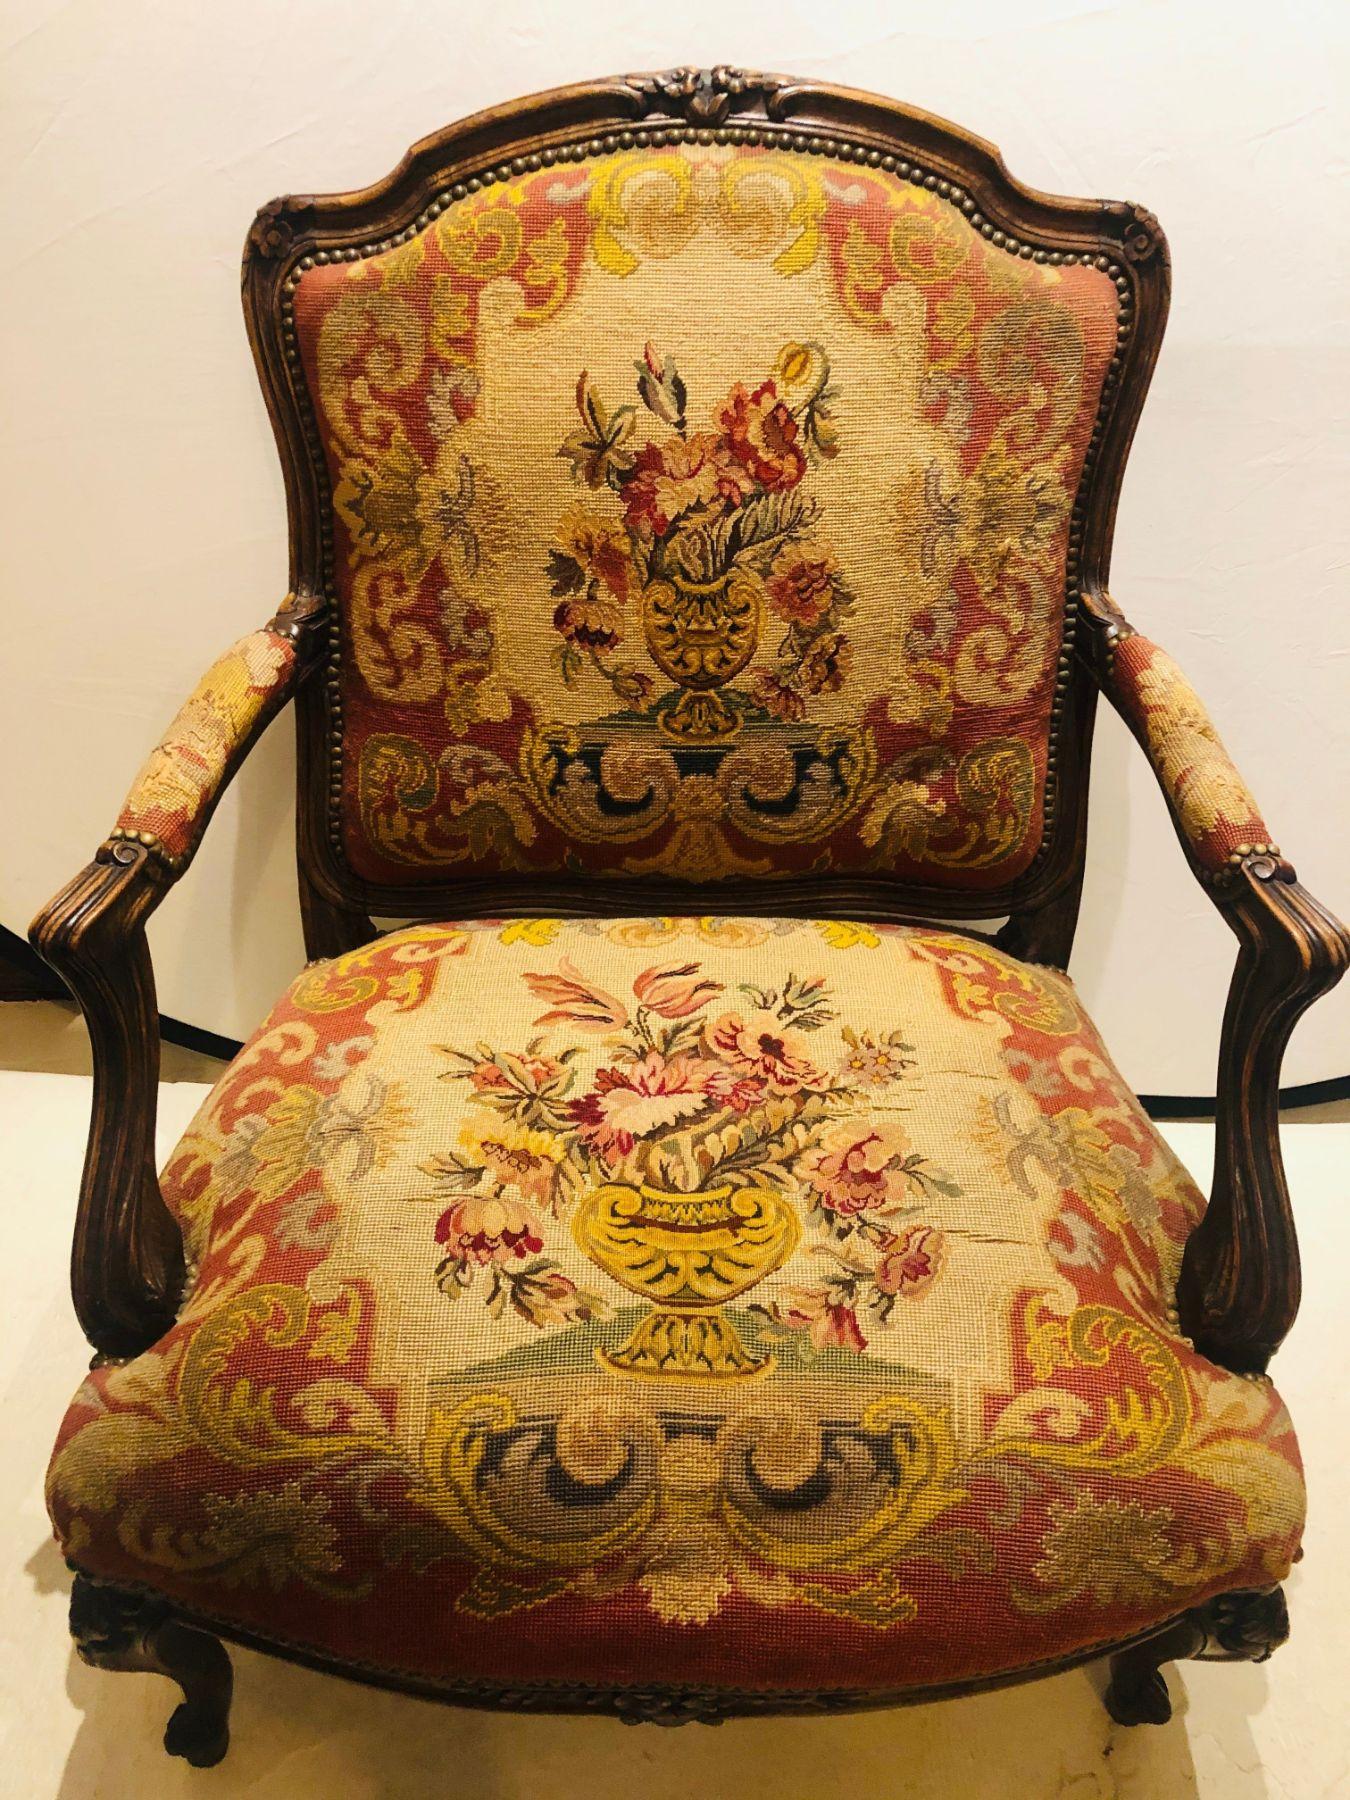 Fauteuil ou bergère de style Louis XV du XIXe siècle. L'assise et le dossier, finement tapissés à l'aiguille, représentent de grands paniers floraux ou des urnes aux couleurs vives sur un cadre en noyer merveilleusement sculpté. Ce magnifique